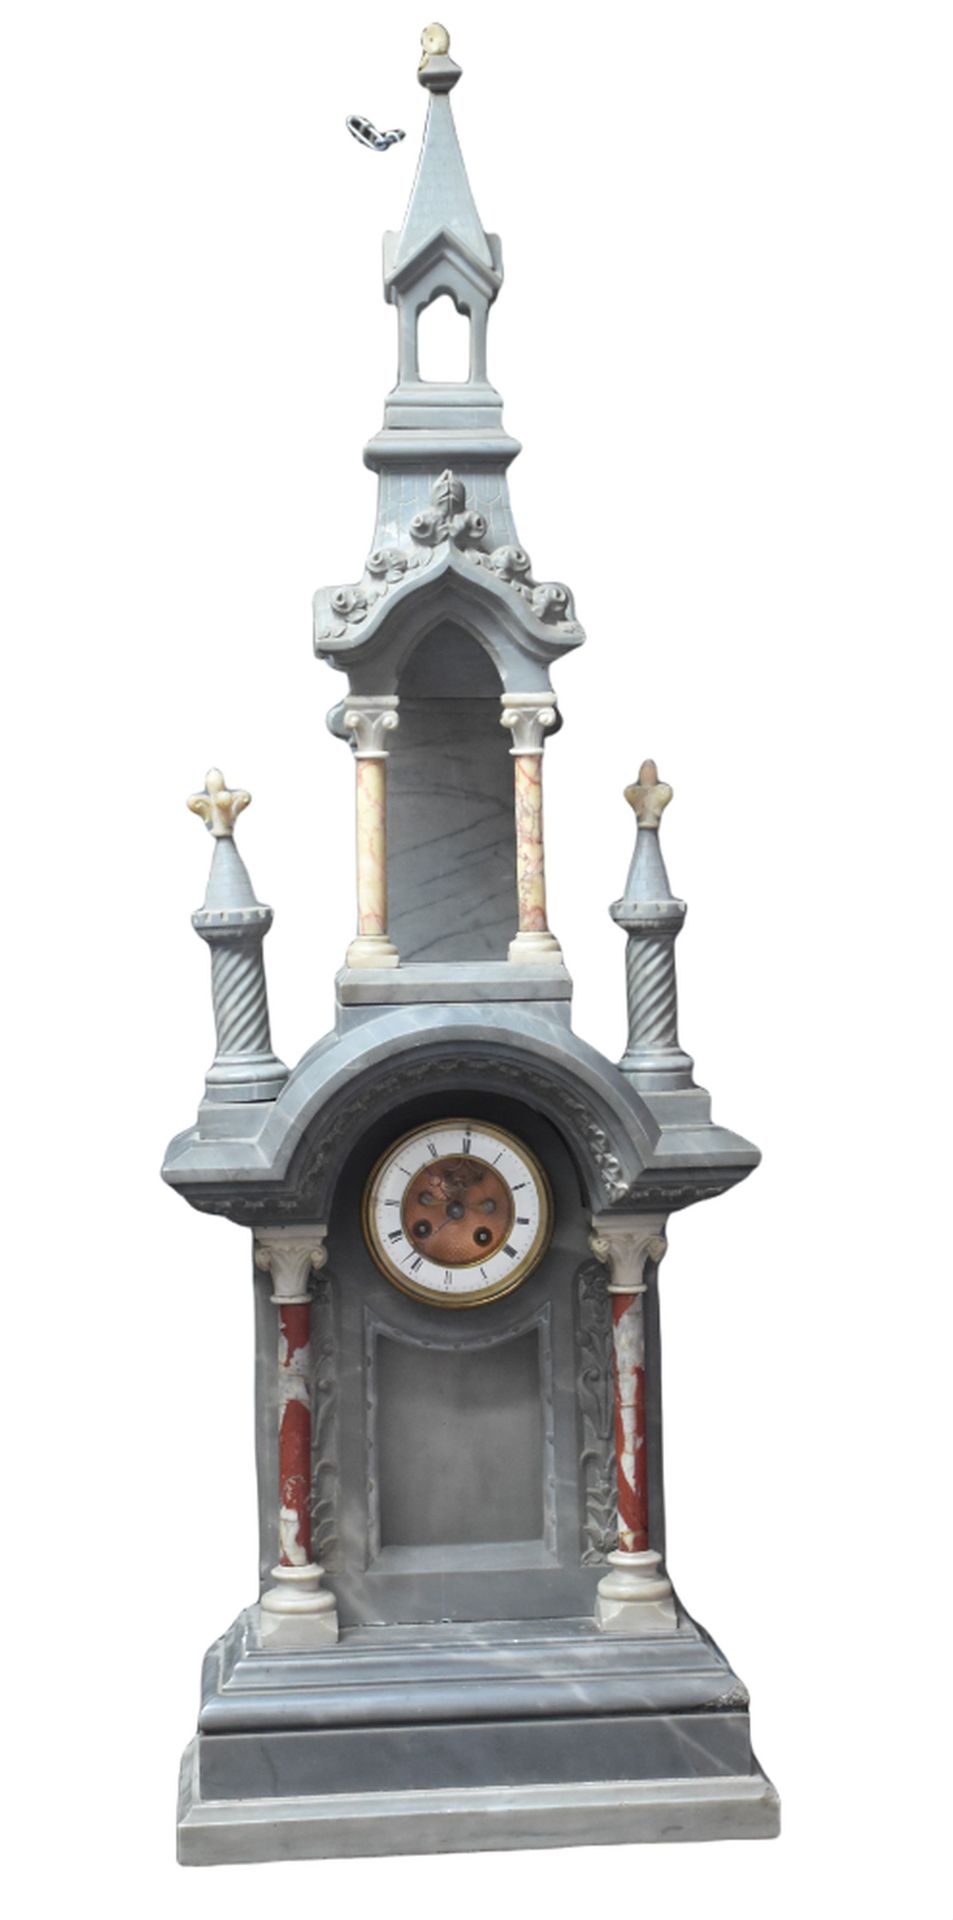 Null 令人印象深刻的精通大理石的作品。一座蓝绿相间、白色和红色的樱桃色大理石钟，呈大教堂形状。19世纪。高度：95厘米。小碎片。 

荷兰：对海运业的影响。&hellip;